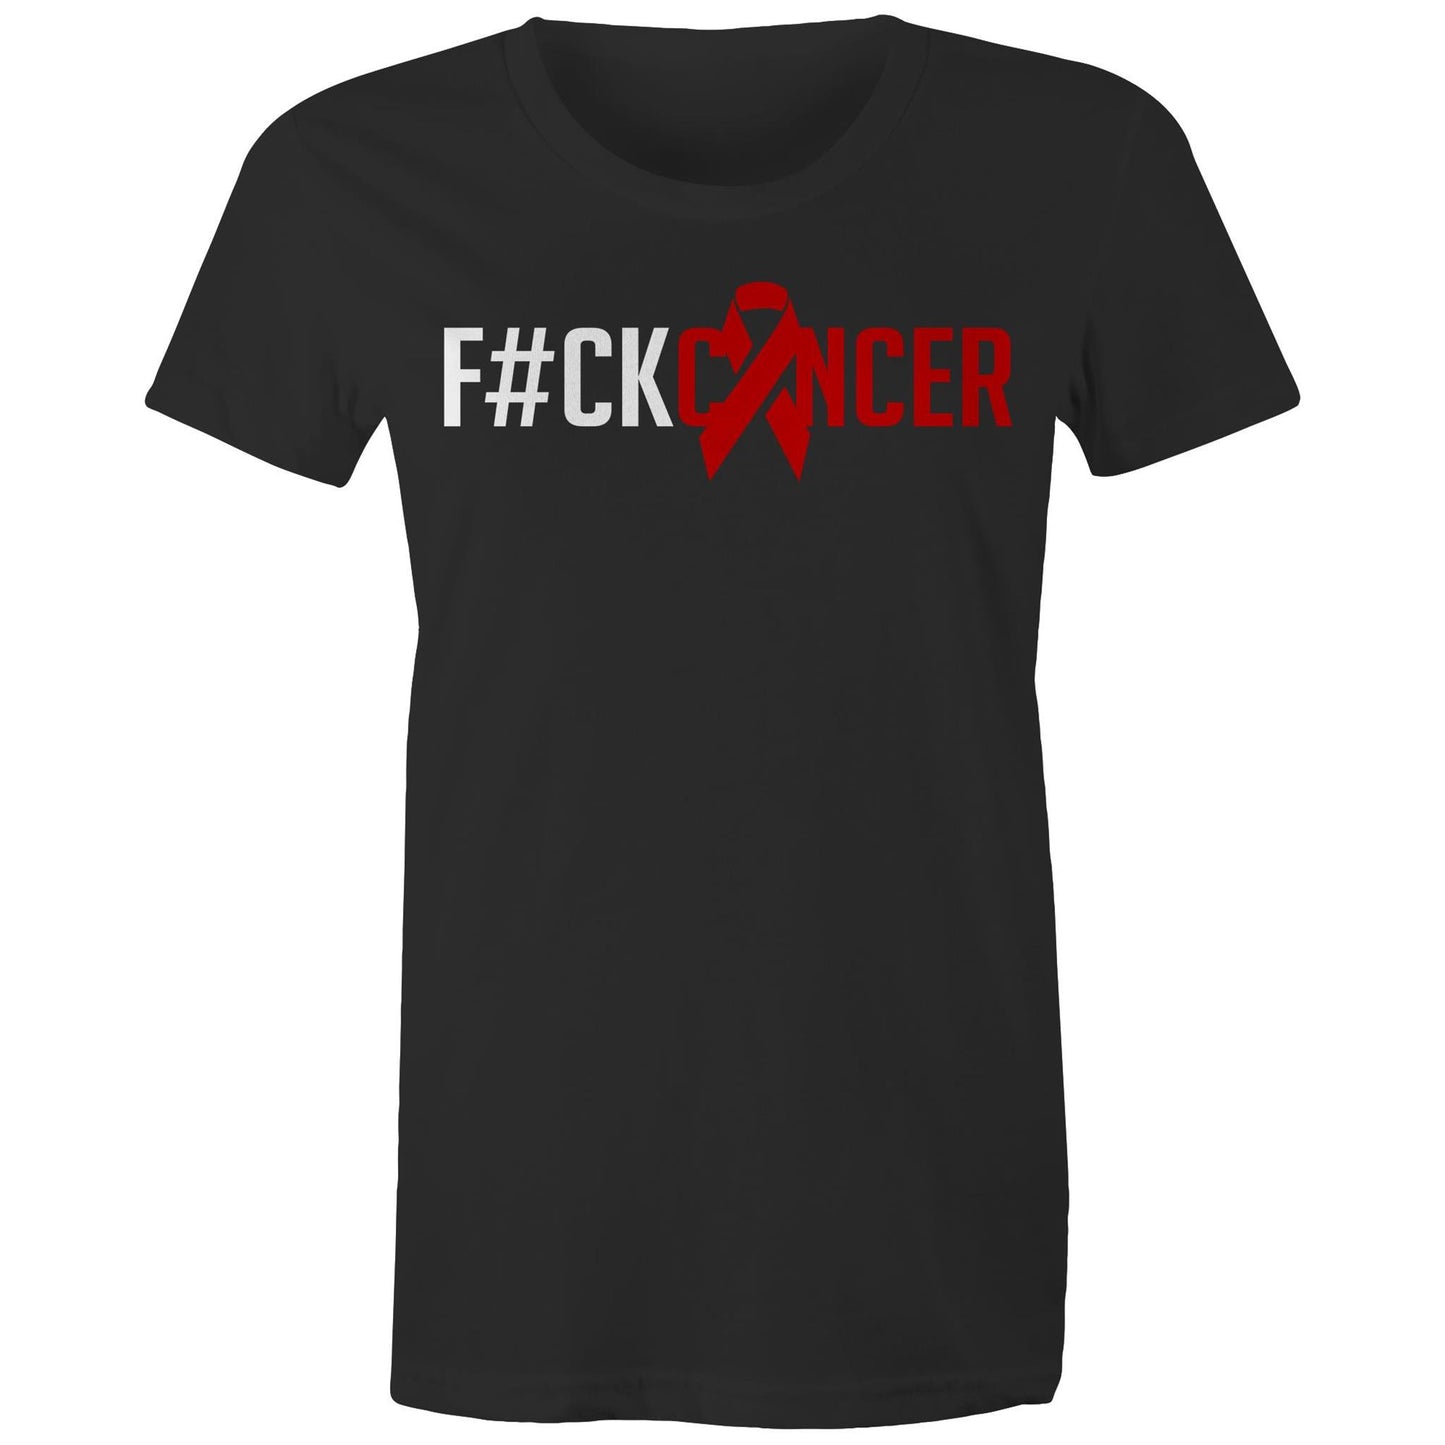 F#CK Cancer Women's Tee